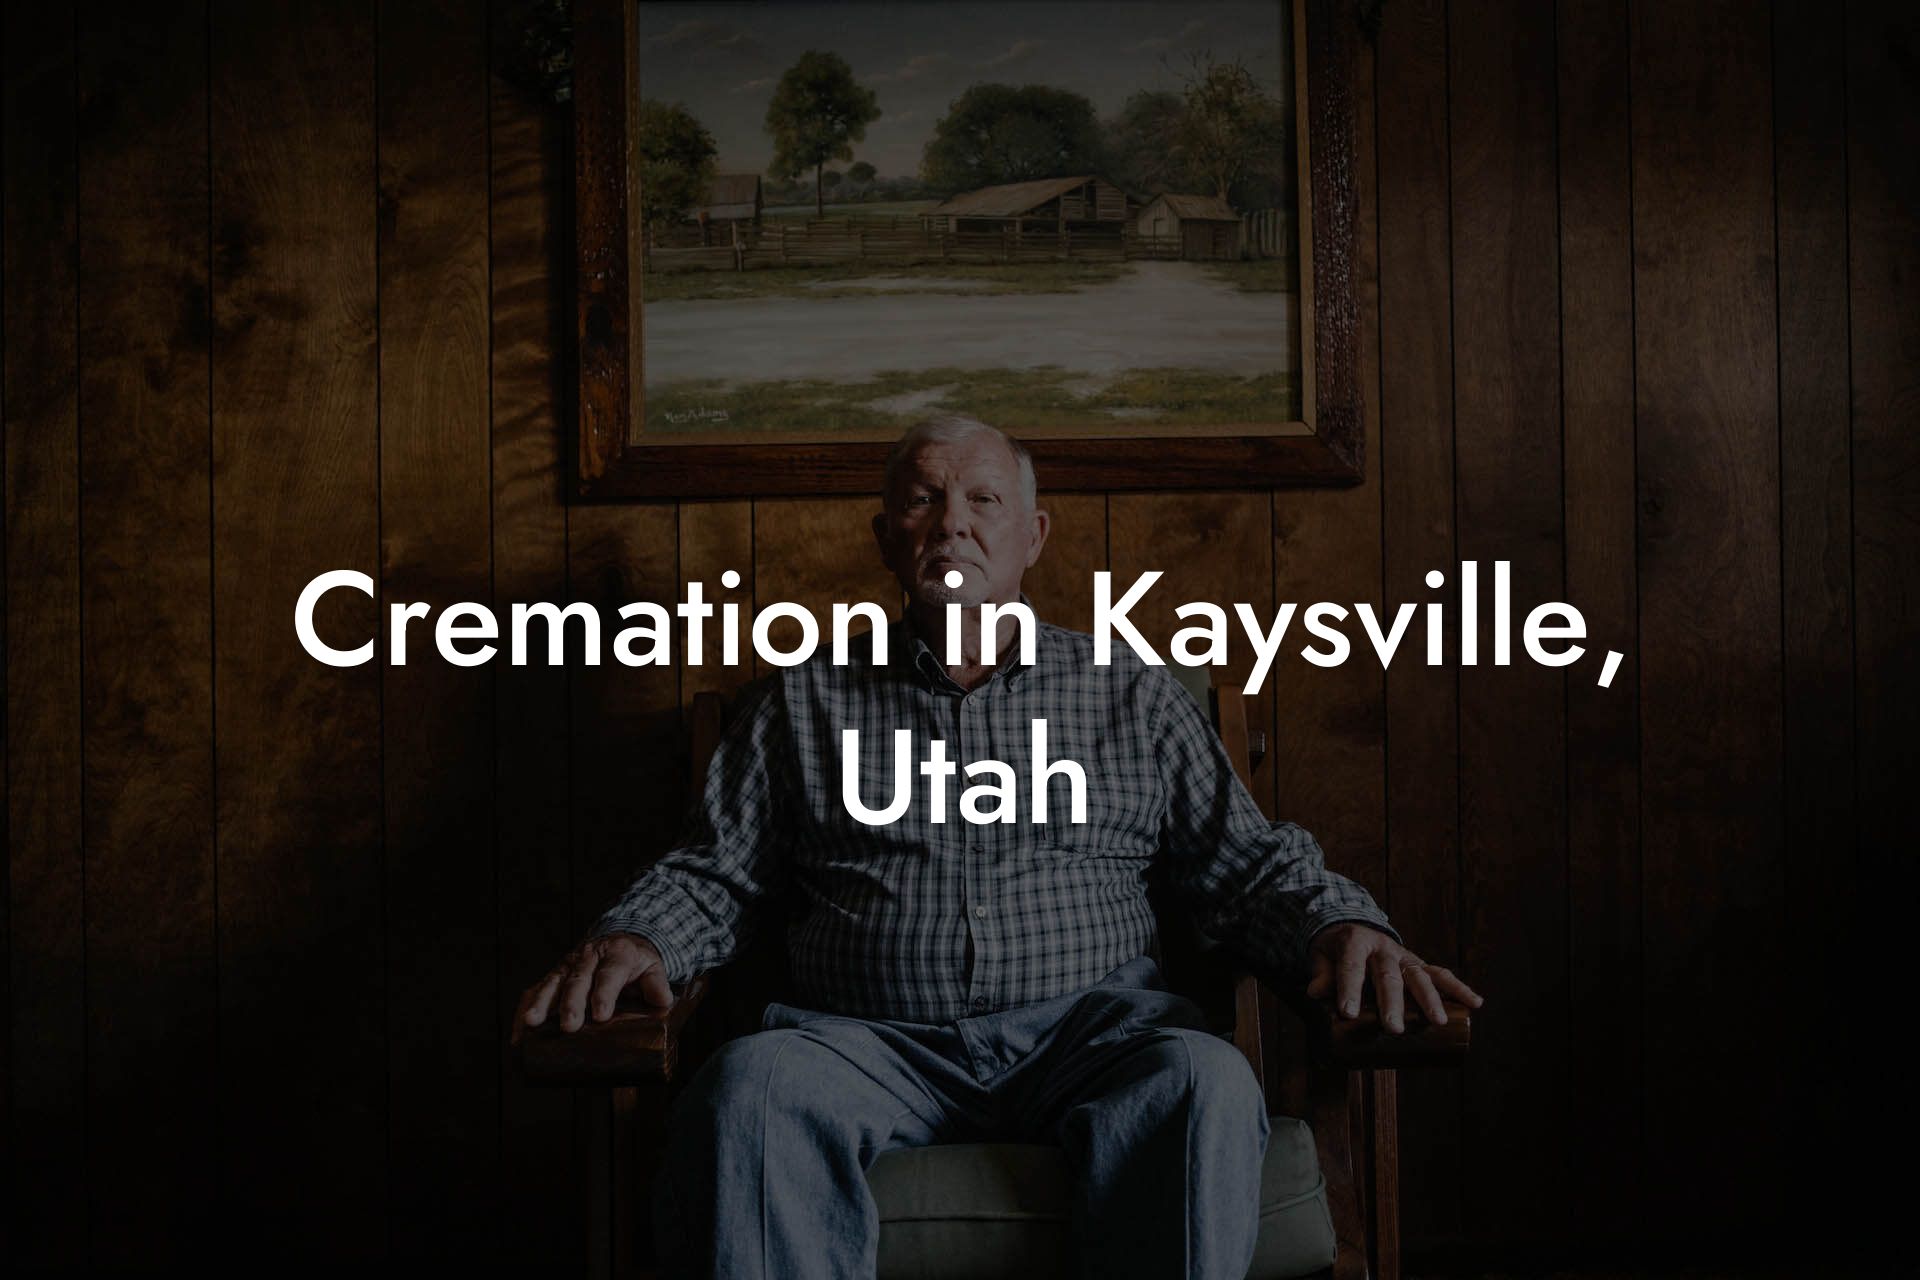 Cremation in Kaysville, Utah